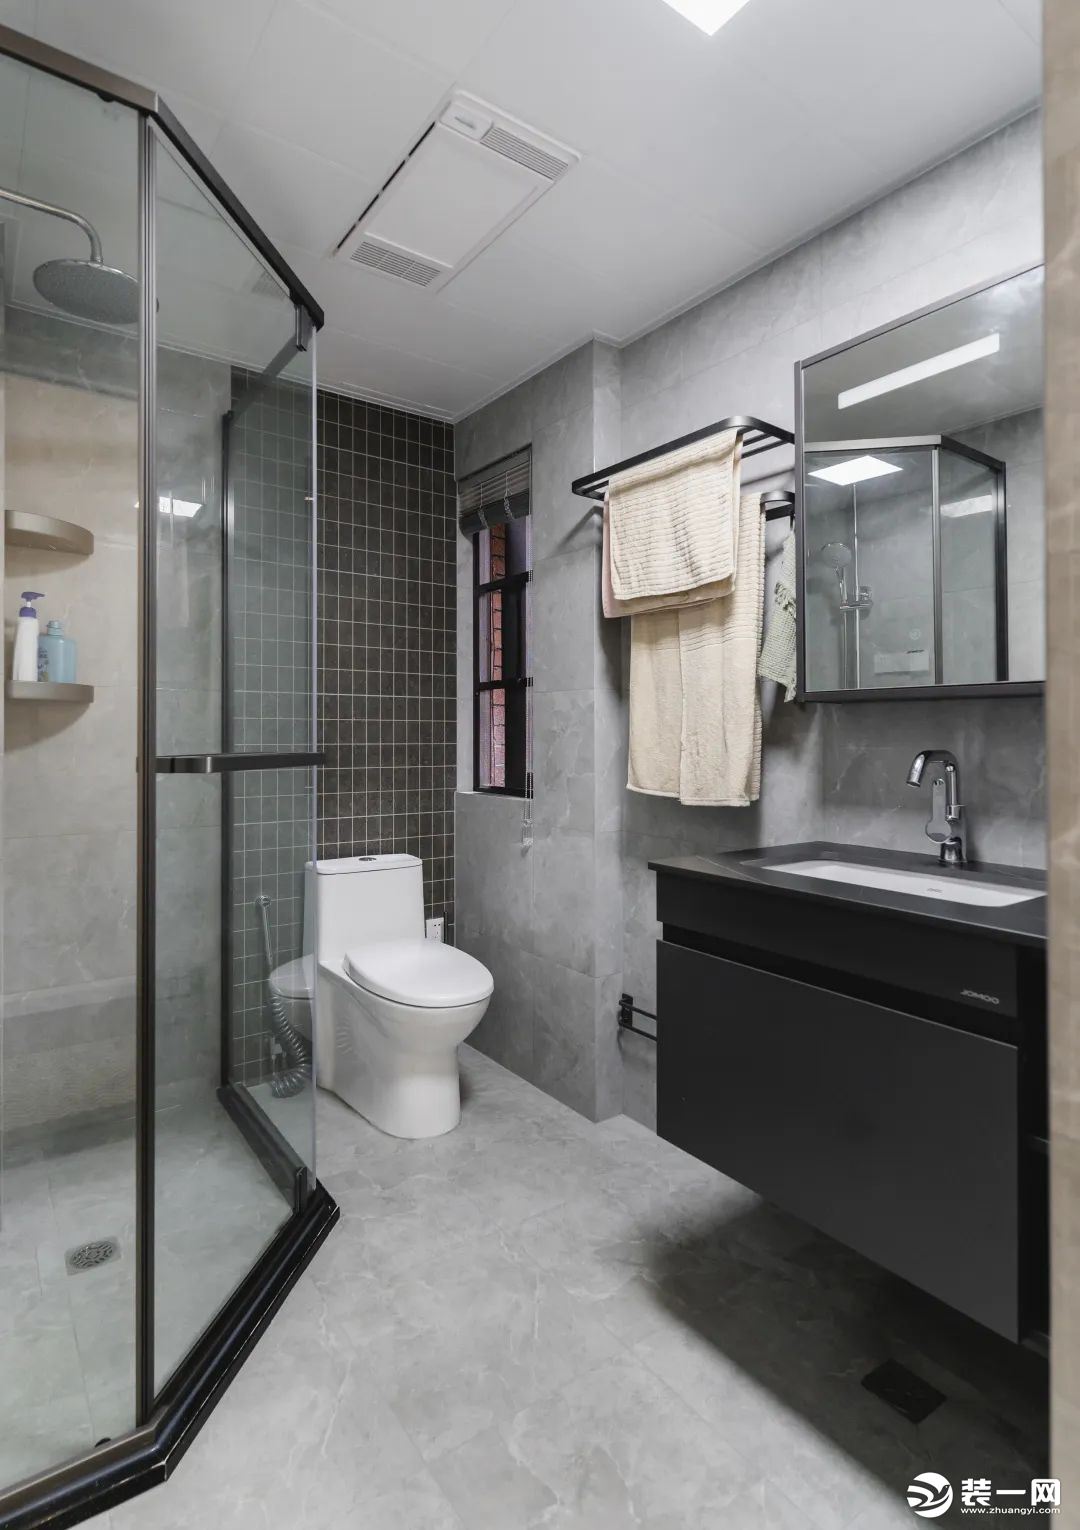 卫浴柜悬空设计，不留卫生死角。马桶区墙面铺贴黑色格子砖，丰富空间层次感。三湿分离的设计，丰富更能外，